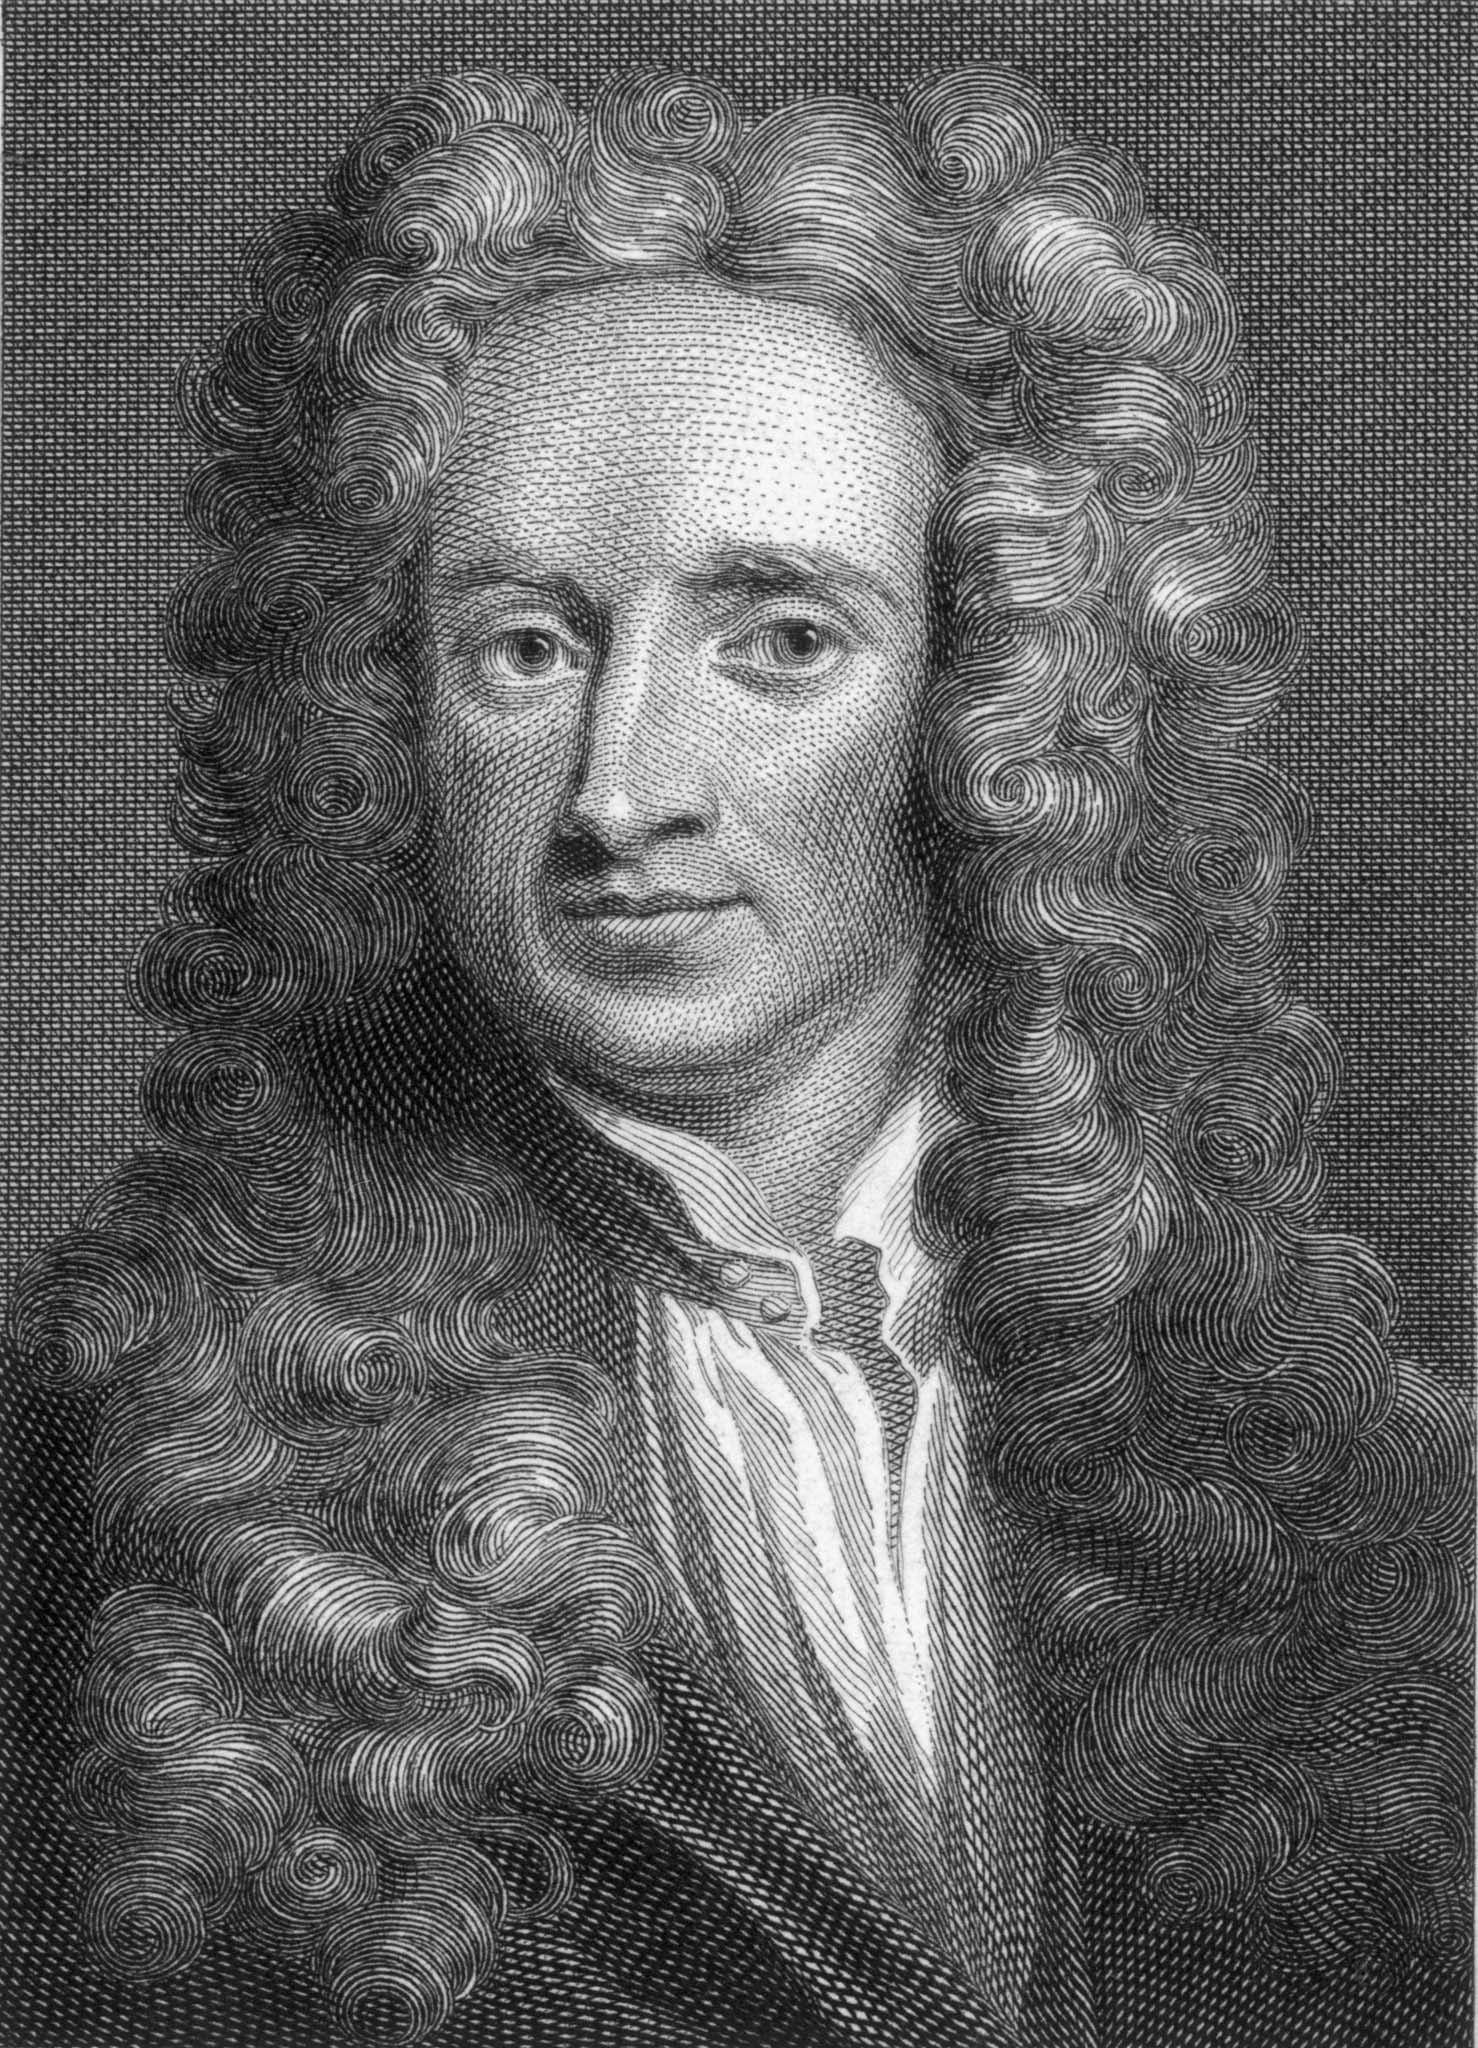 &#13;
Sir Isaac Newton (Getty)&#13;